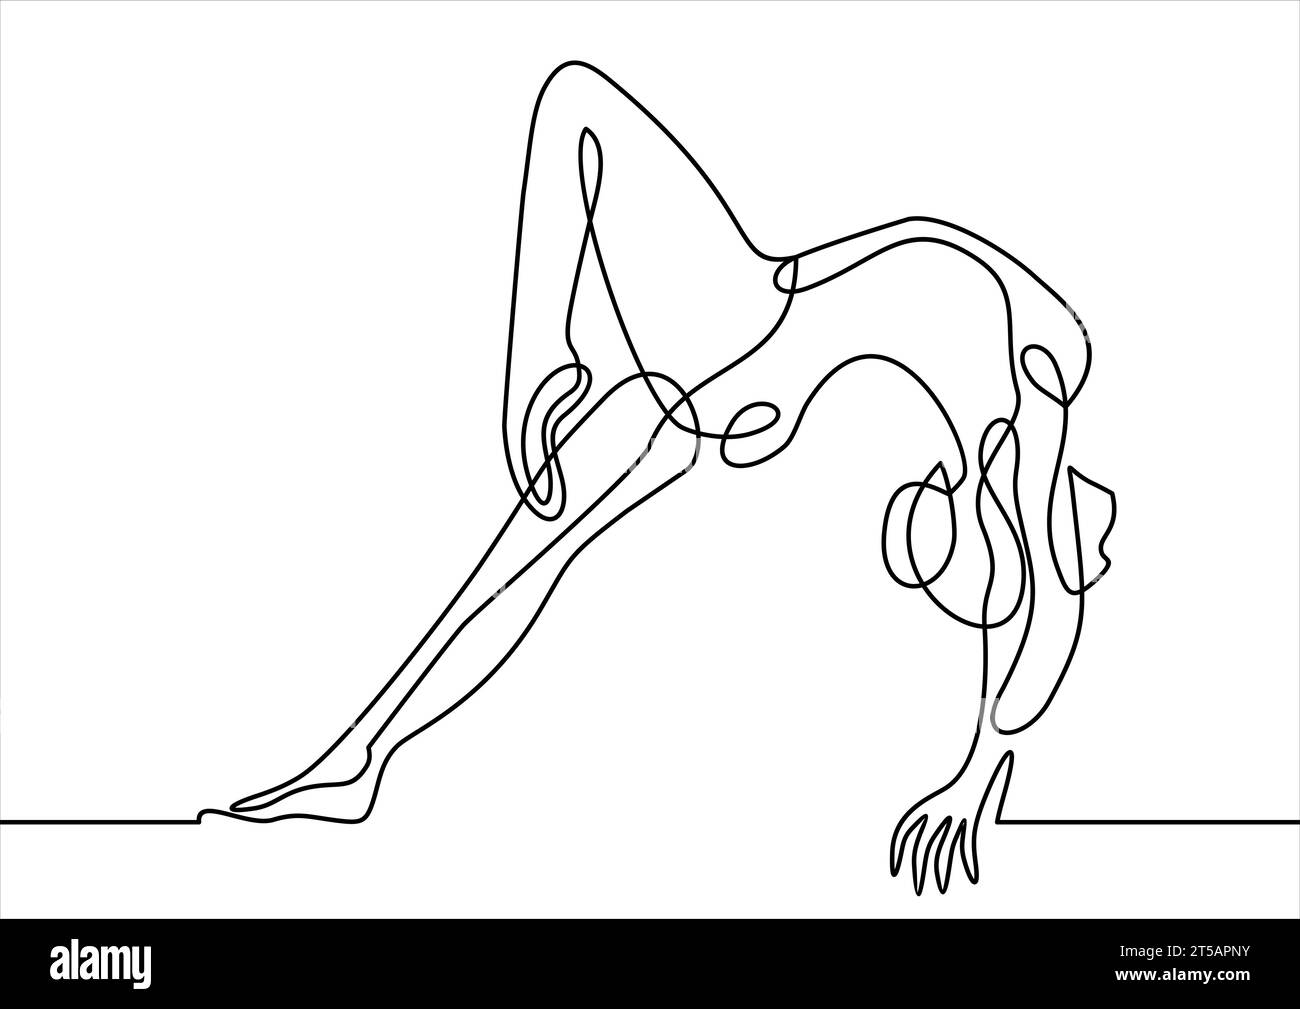 Jeune gymnaste féminin exécutant la main stand sur la poutre d'équilibre - dessin au trait continu Illustration de Vecteur